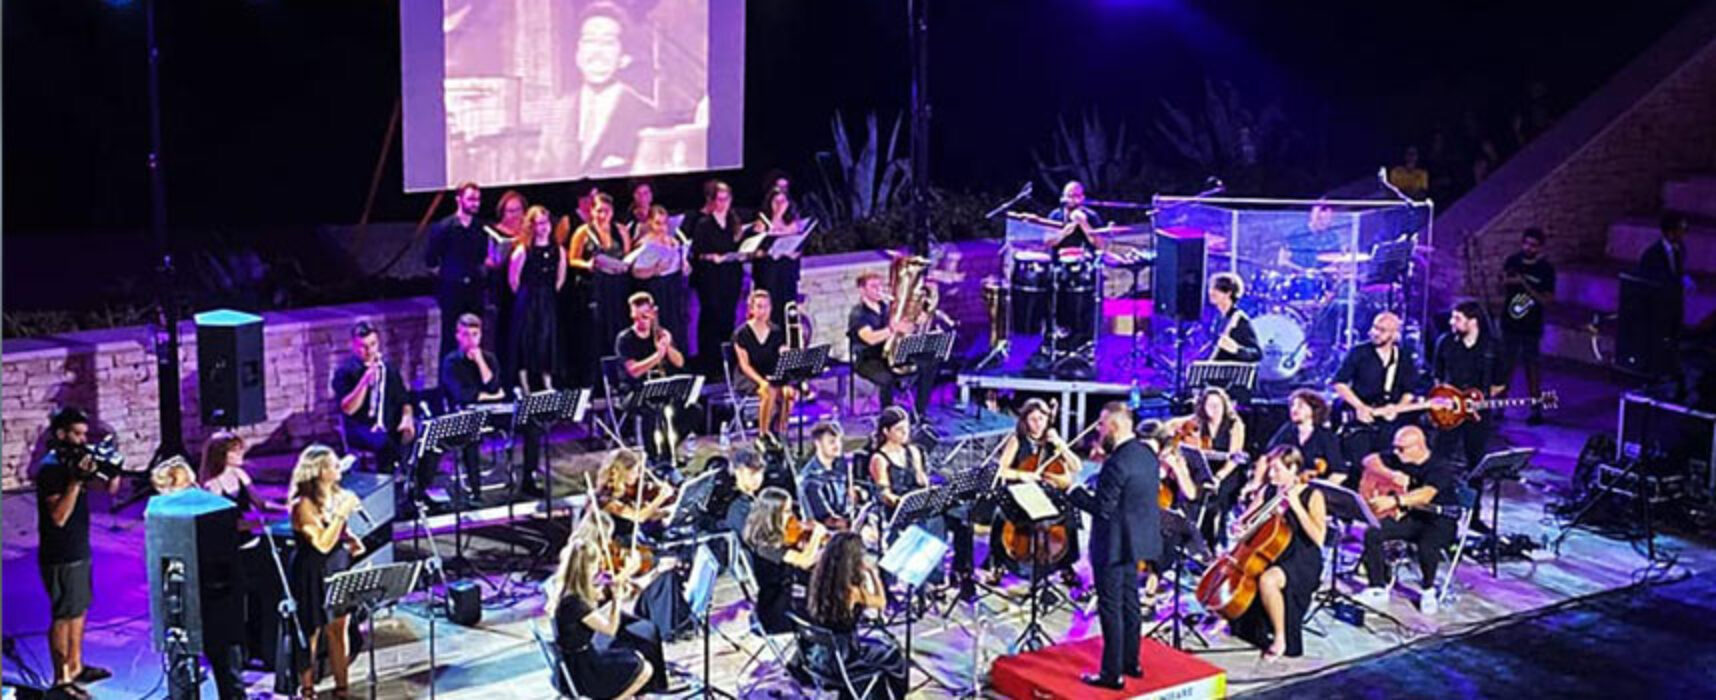 A Bisceglie torna l’orchestra “FaMiFaRe” con il concerto “Note di mezza estate”